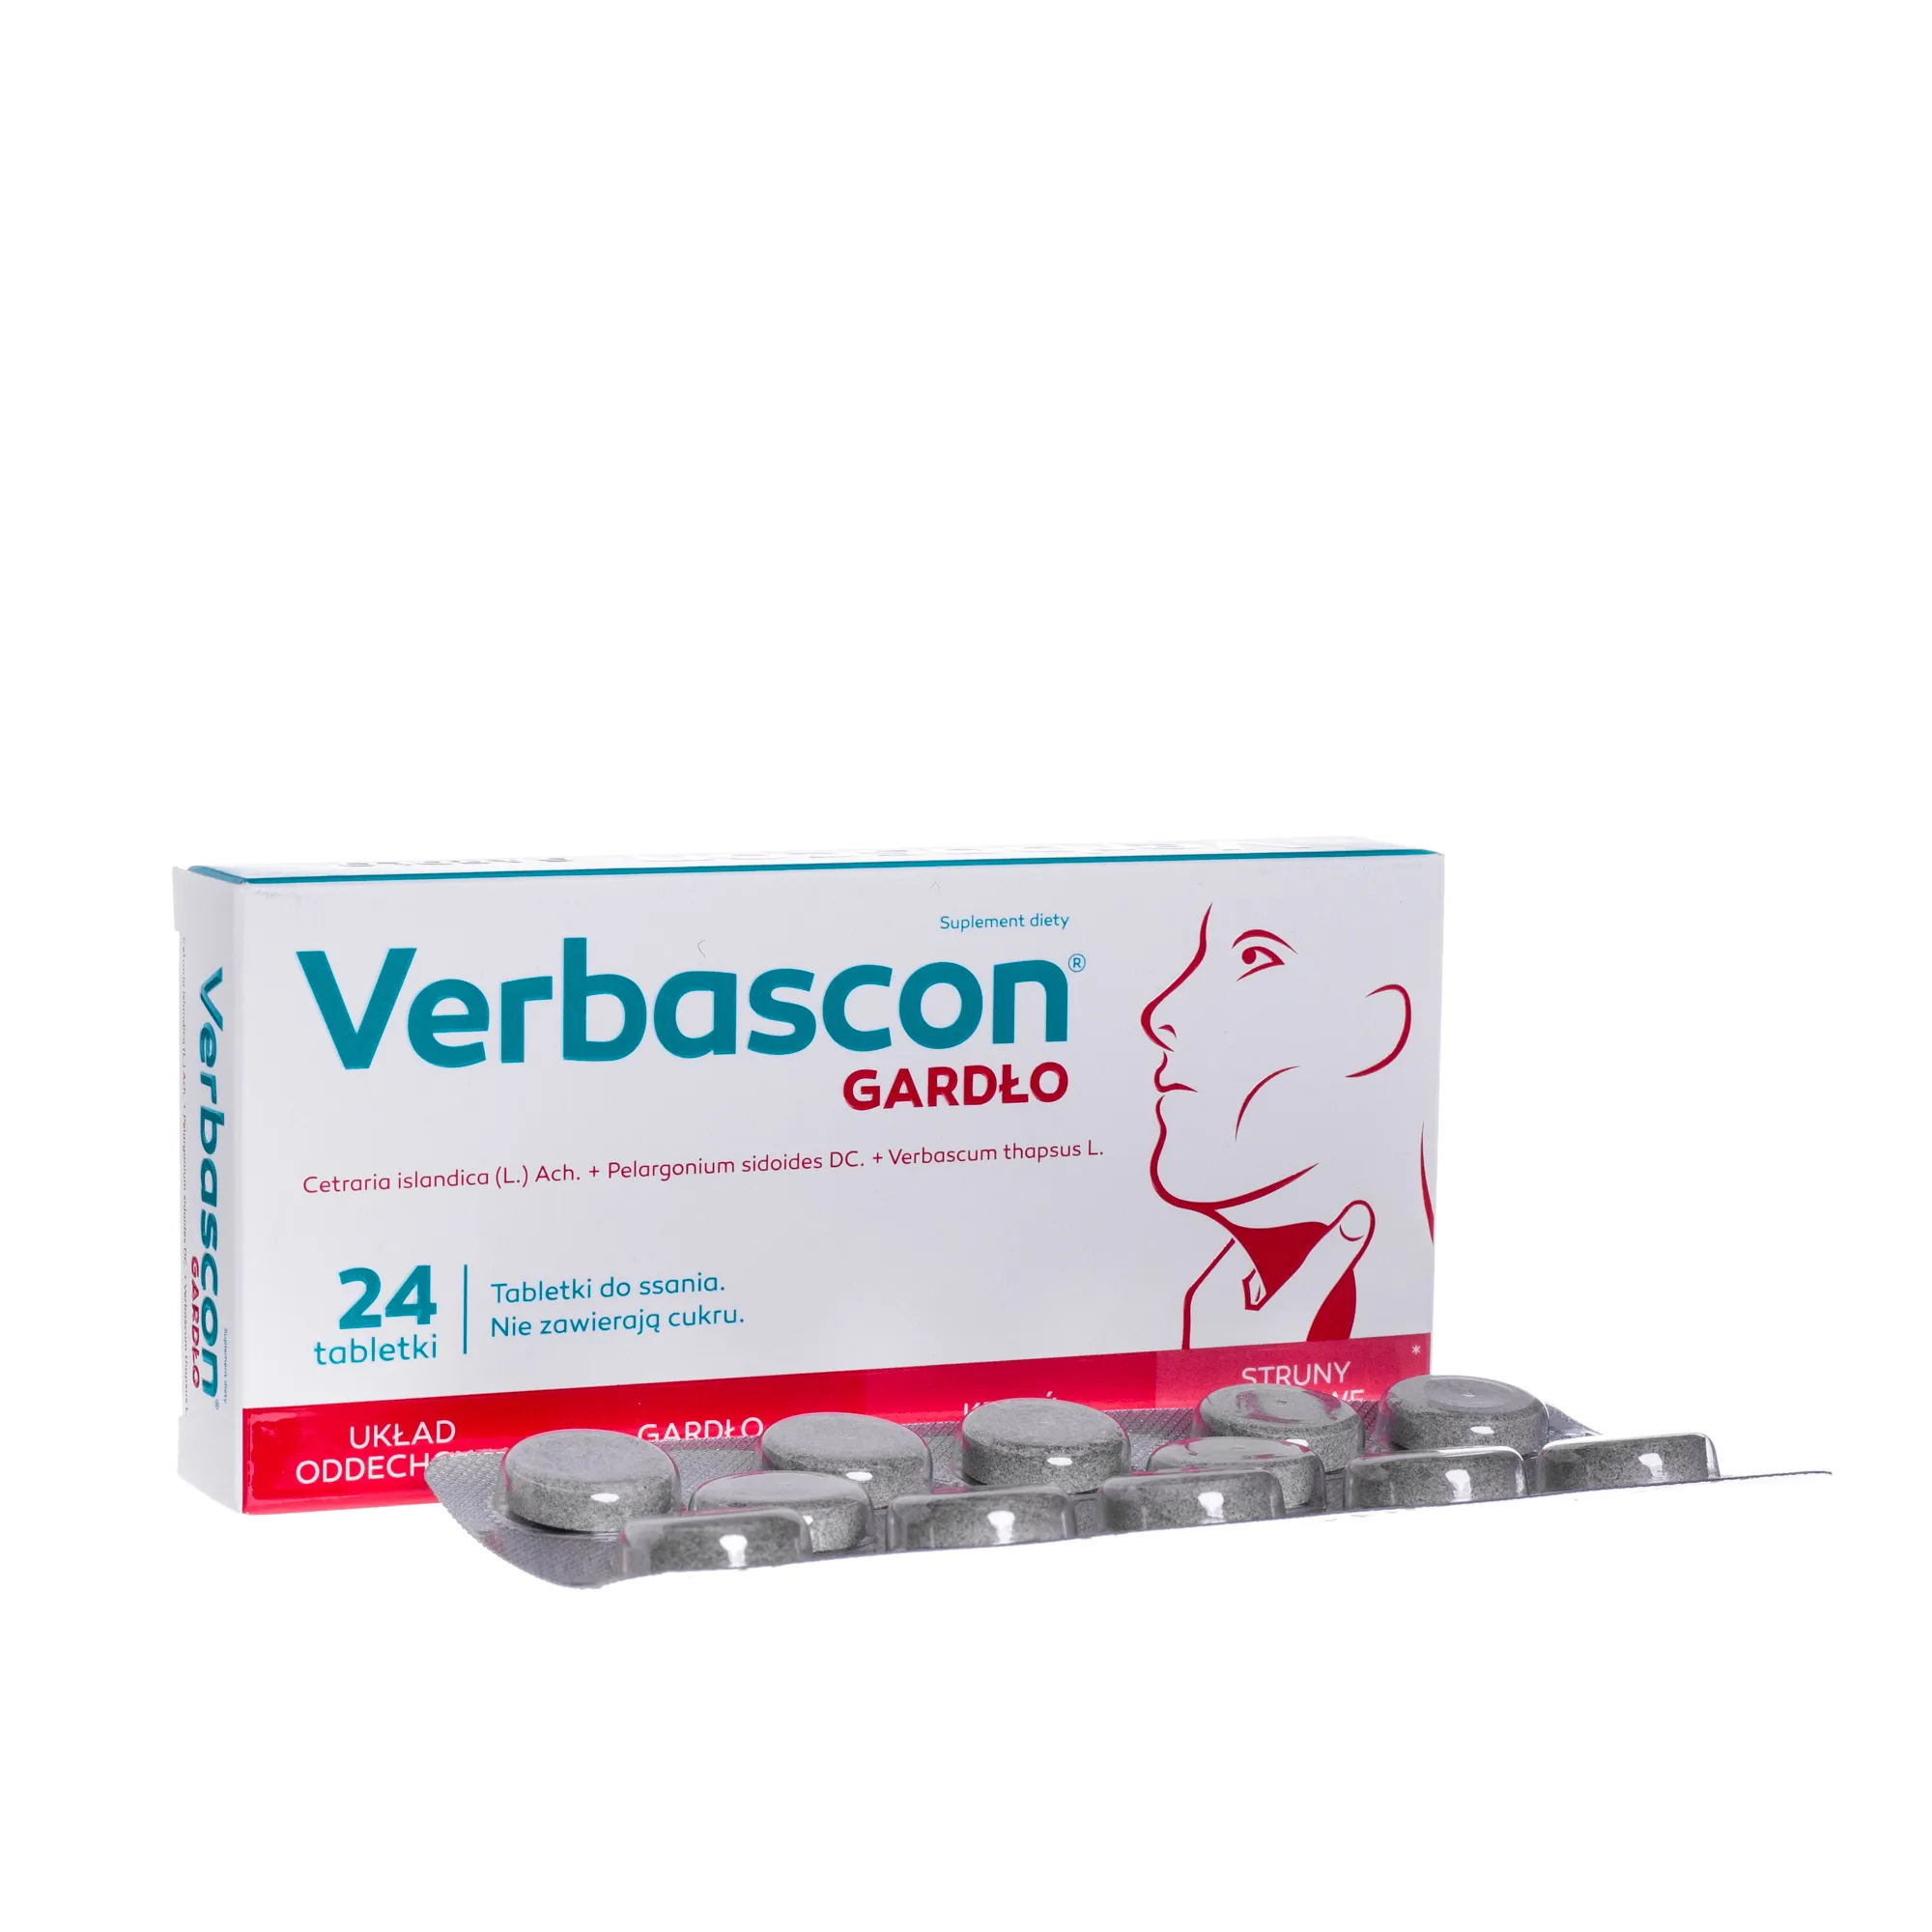 Verbascon Gardło, suplement diety, 24 tabletki do ssania 